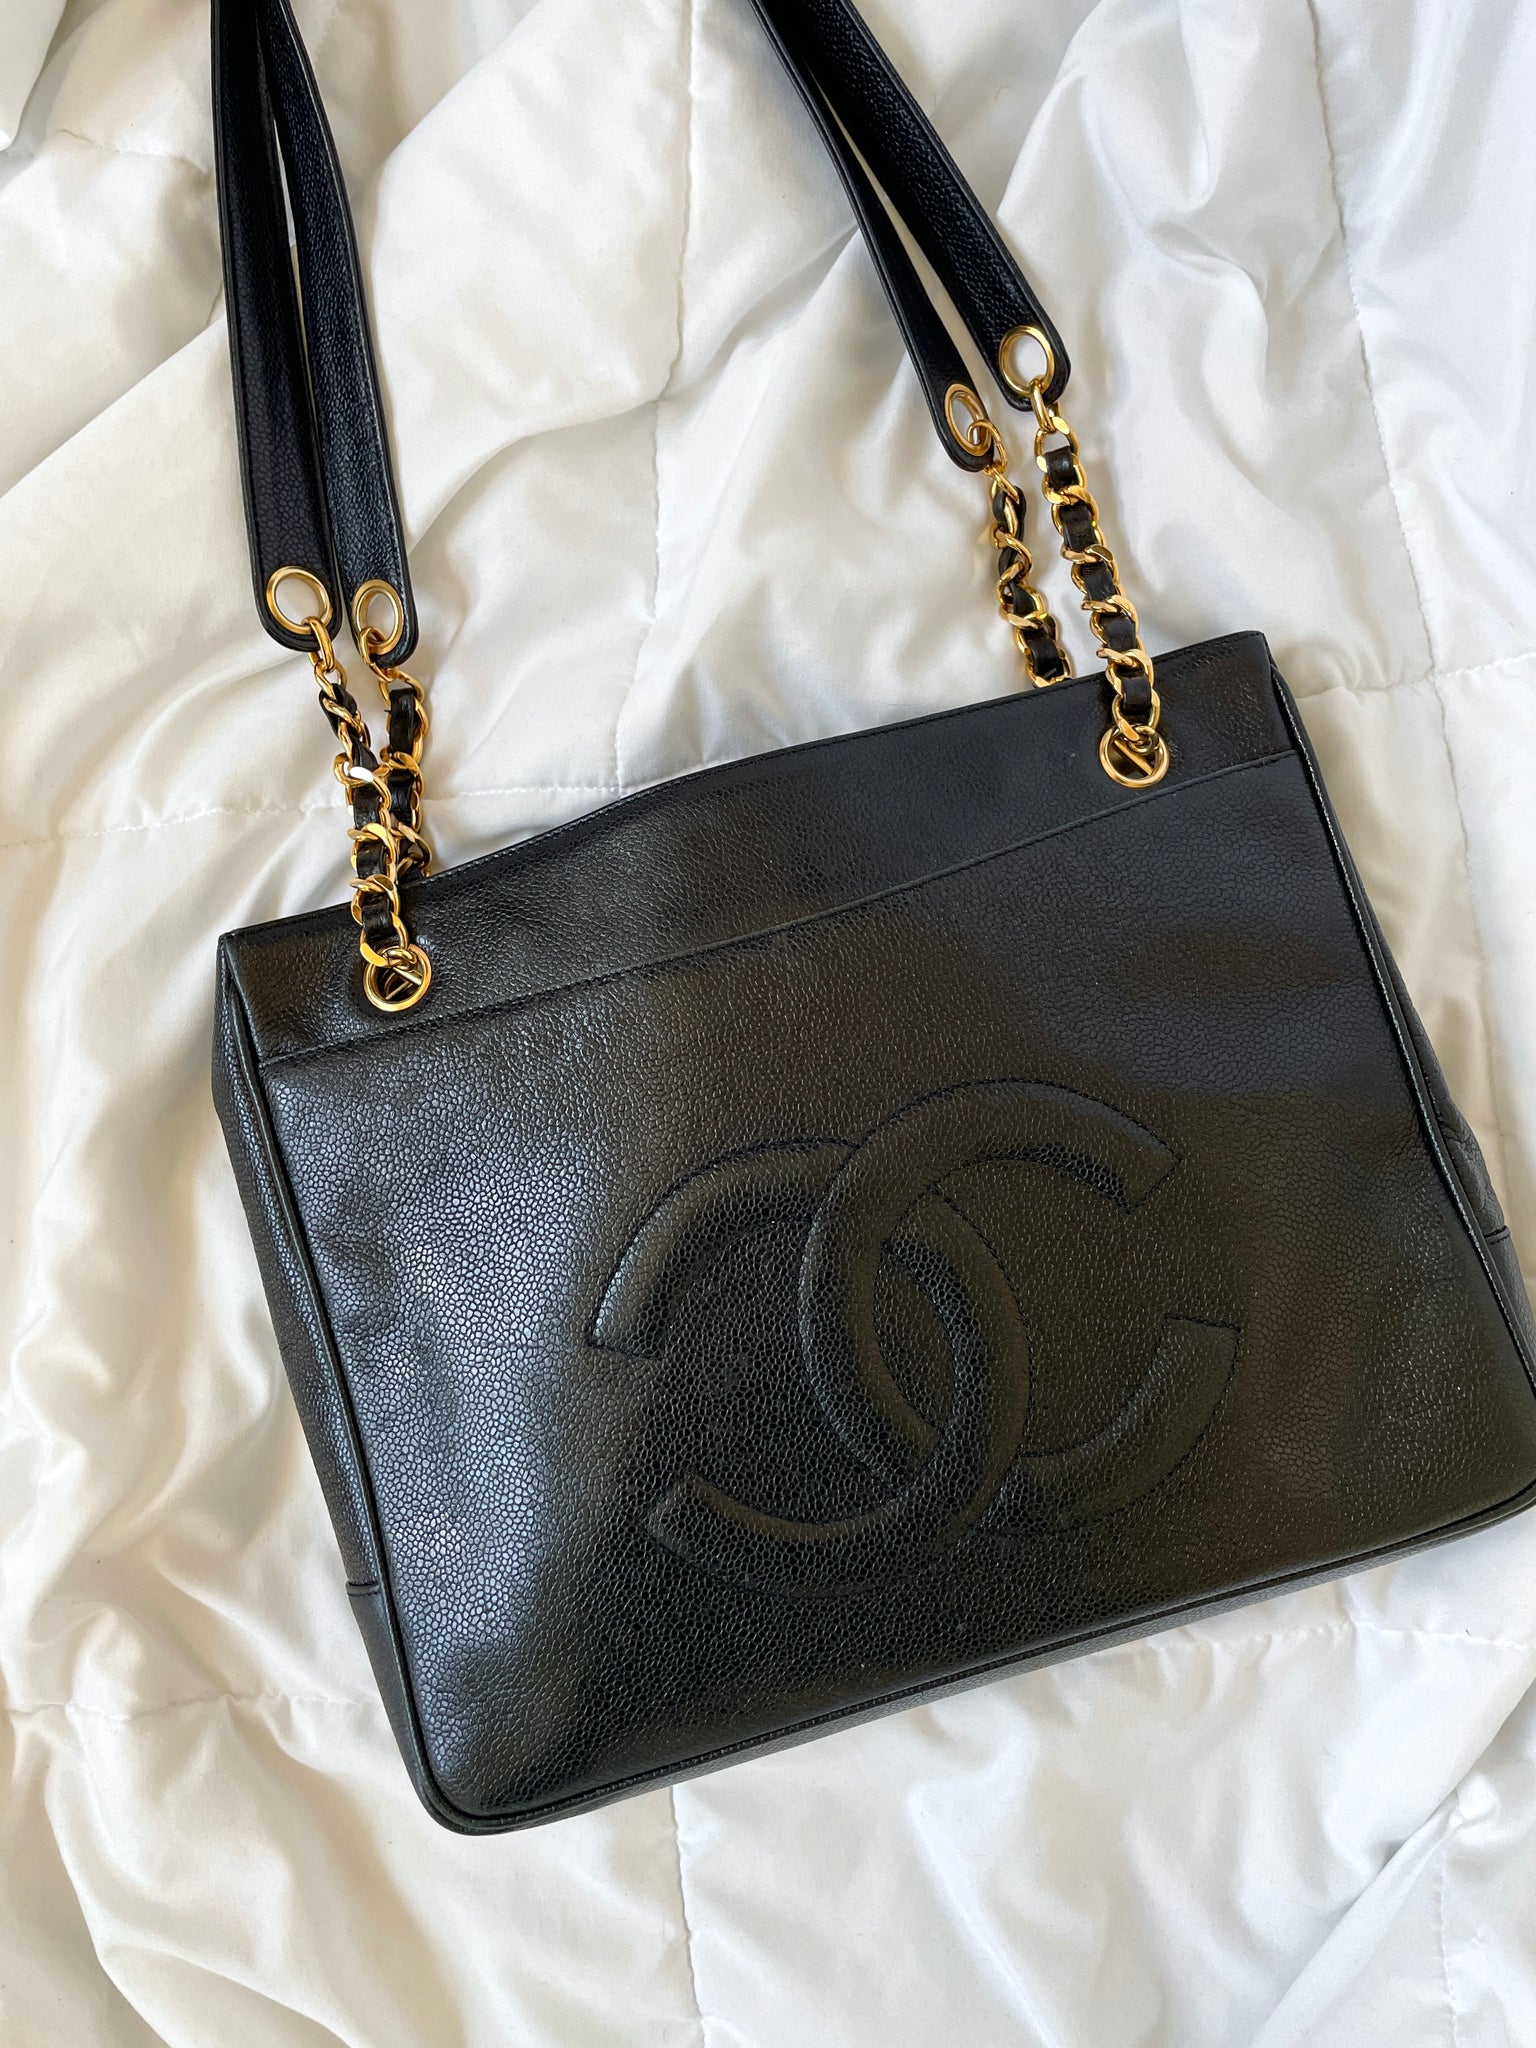 Chanel Vintage Black Caviar Leather Cc Zip Tote Shoulder Bag Gold Authentic  B343